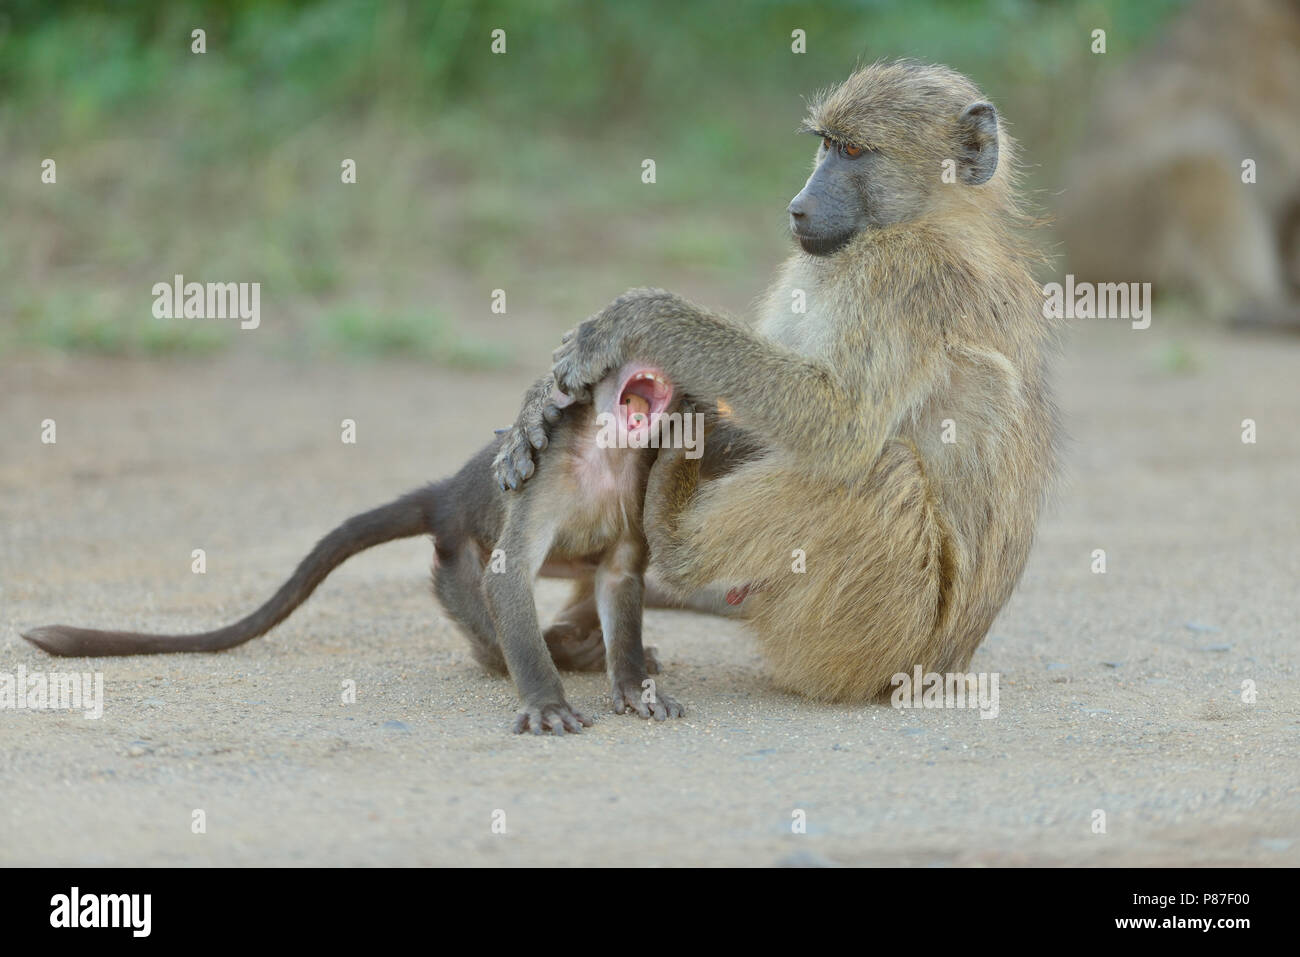 Baby babbuino azione di riproduzione più carini in scimmia Kruger Foto Stock